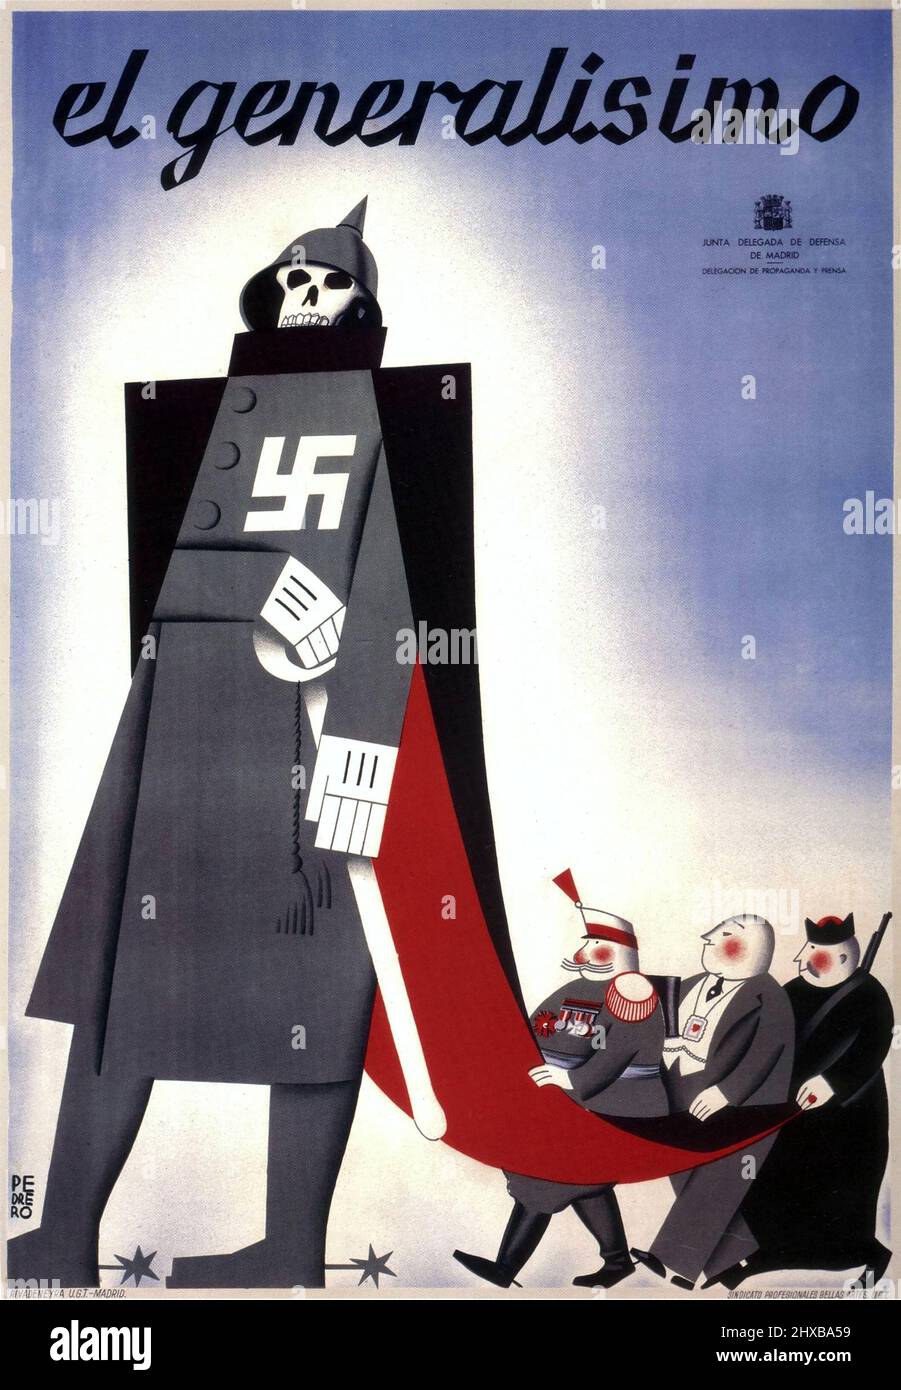 Le général Franco 'El Generalísimo' affiche ancienne de la Guerre civile espagnole du syndicat socialiste, U.G.T., montrant une caricature d'un nazi, 1937 Banque D'Images